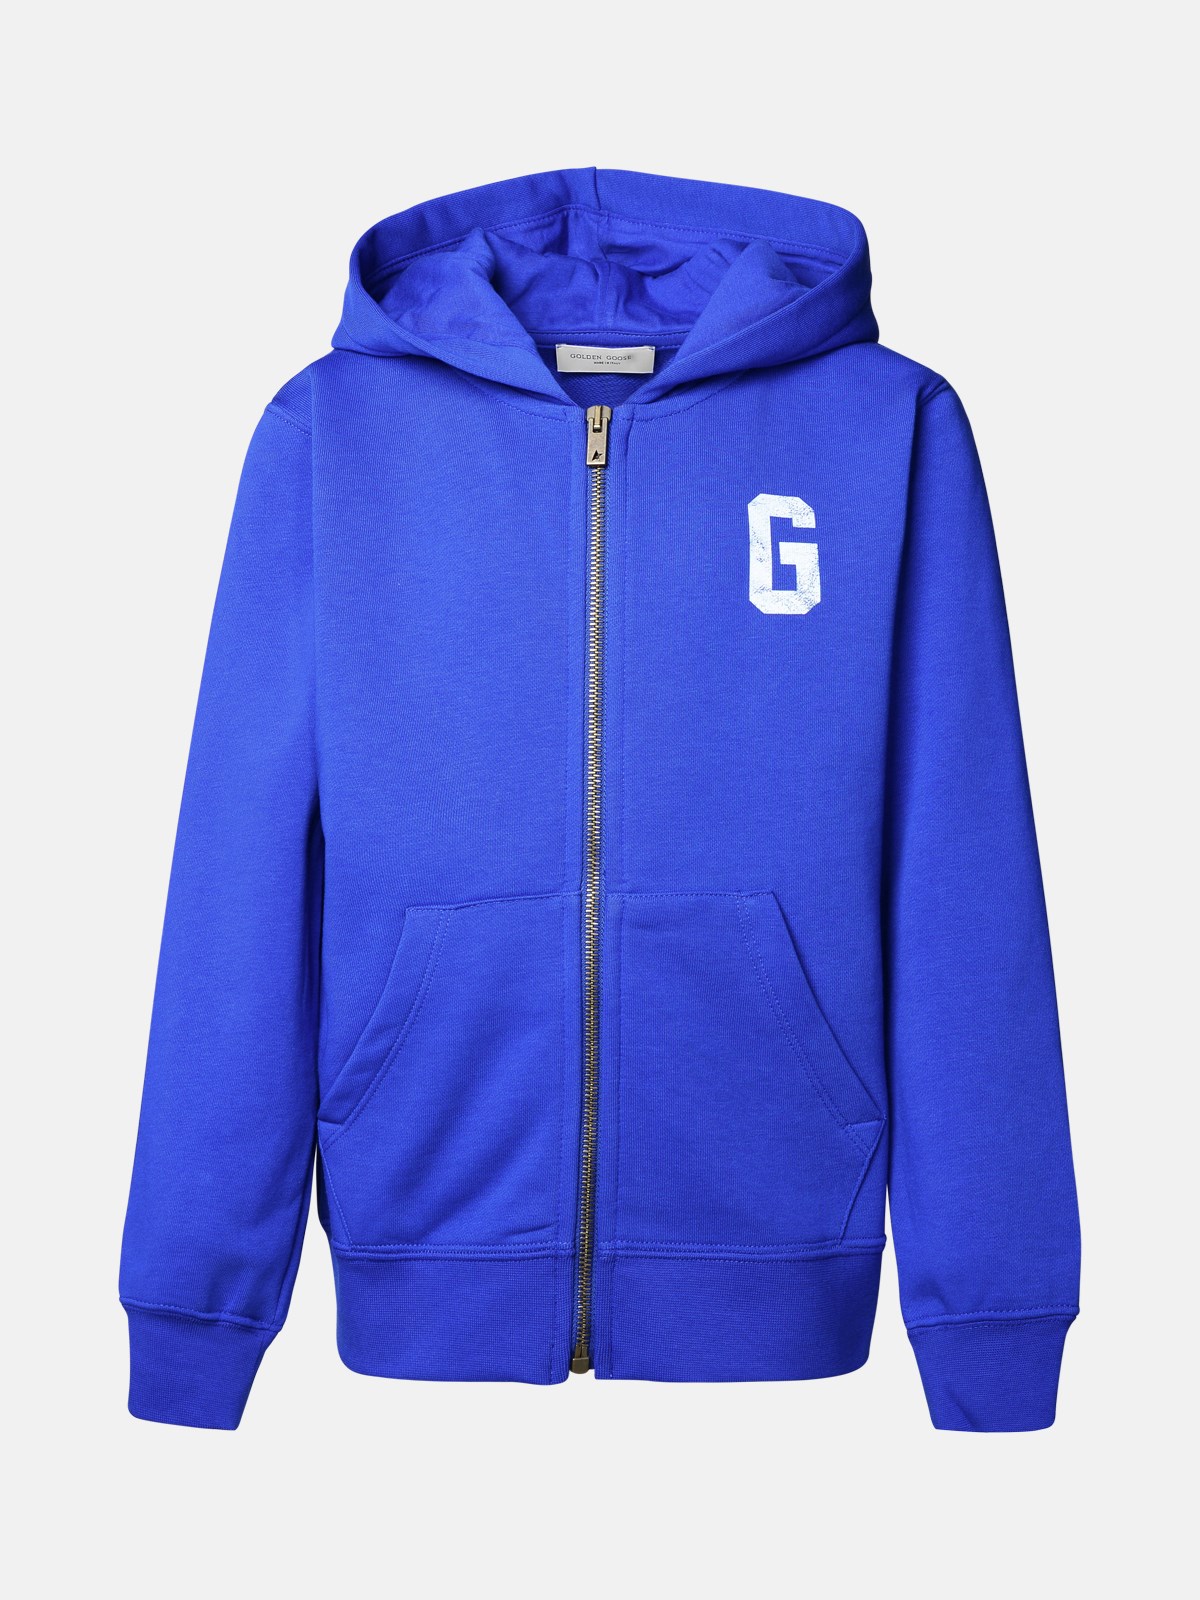 Shop Golden Goose Blue Cotton Sweatshirt